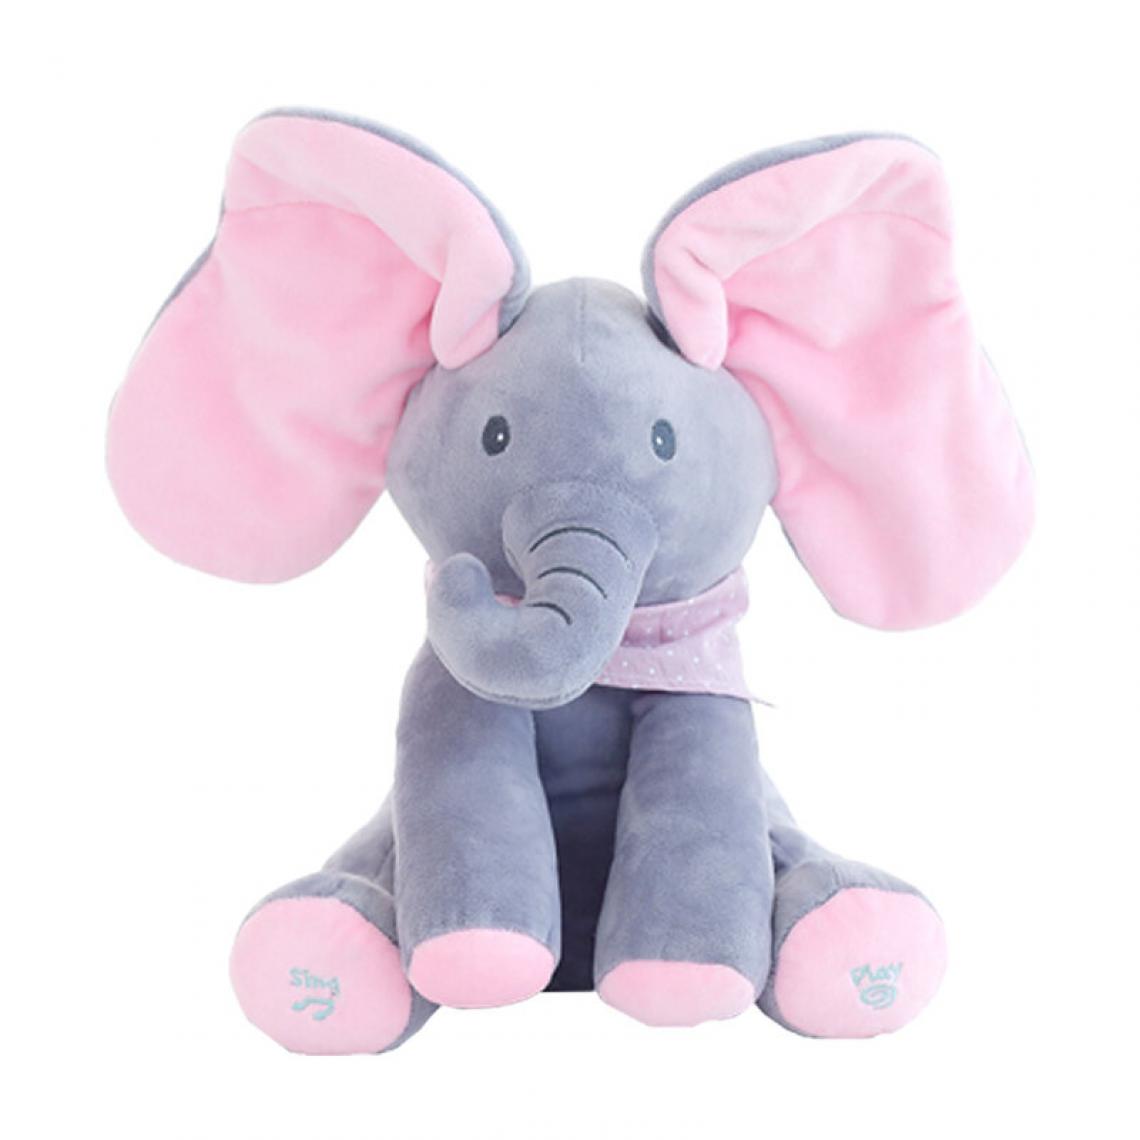 Universal - Bébé cache-cache, poupée éléphant, chanteur, jouet, cadeau.(Rose) - Animaux